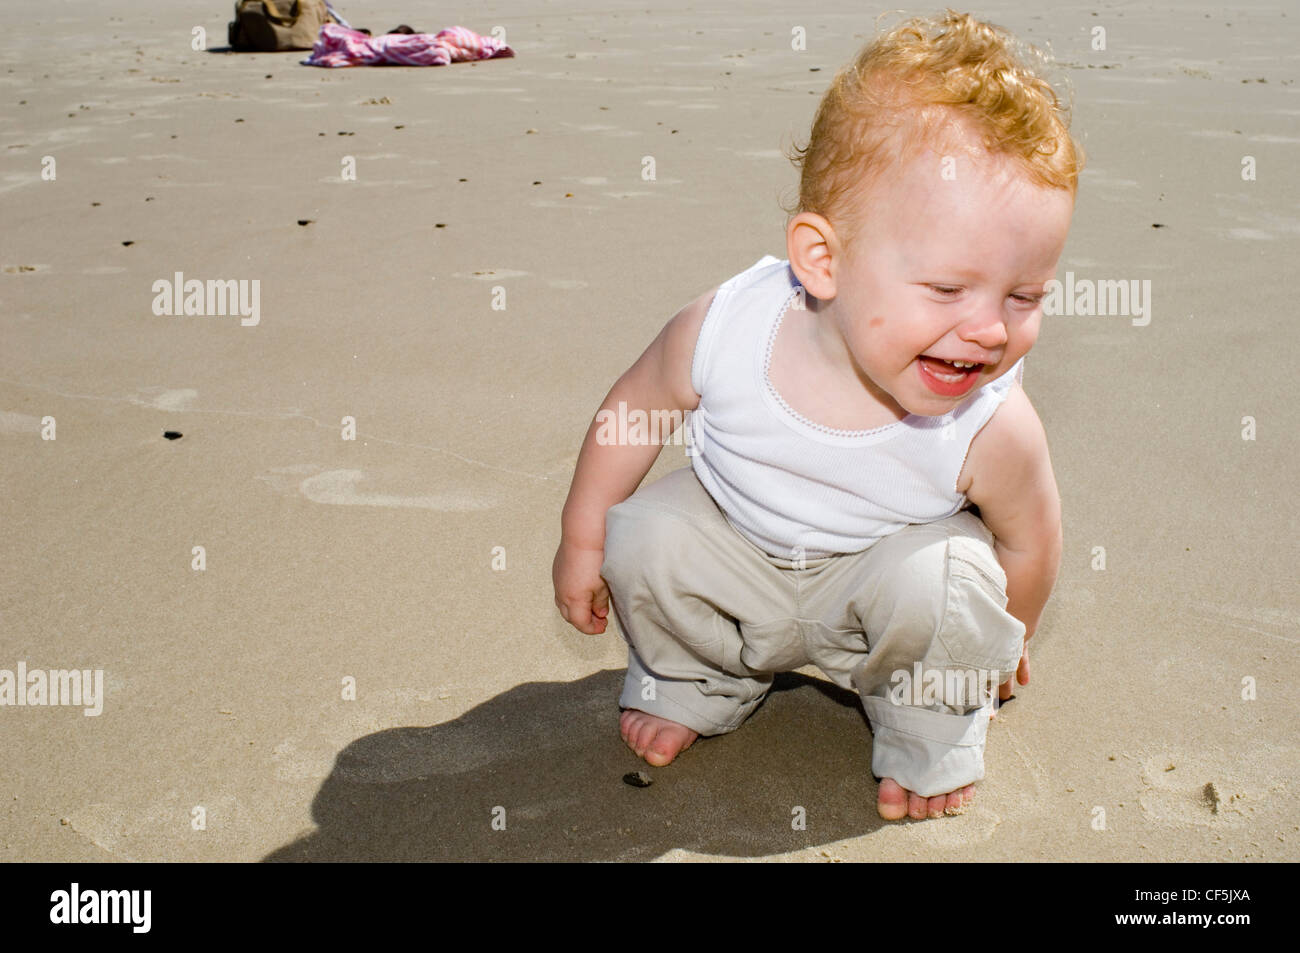 Männliches Baby mit blonden Haaren, trägt eine weiße Weste und Beige Hose,  sitzt am Strand, Lächeln Stockfotografie - Alamy